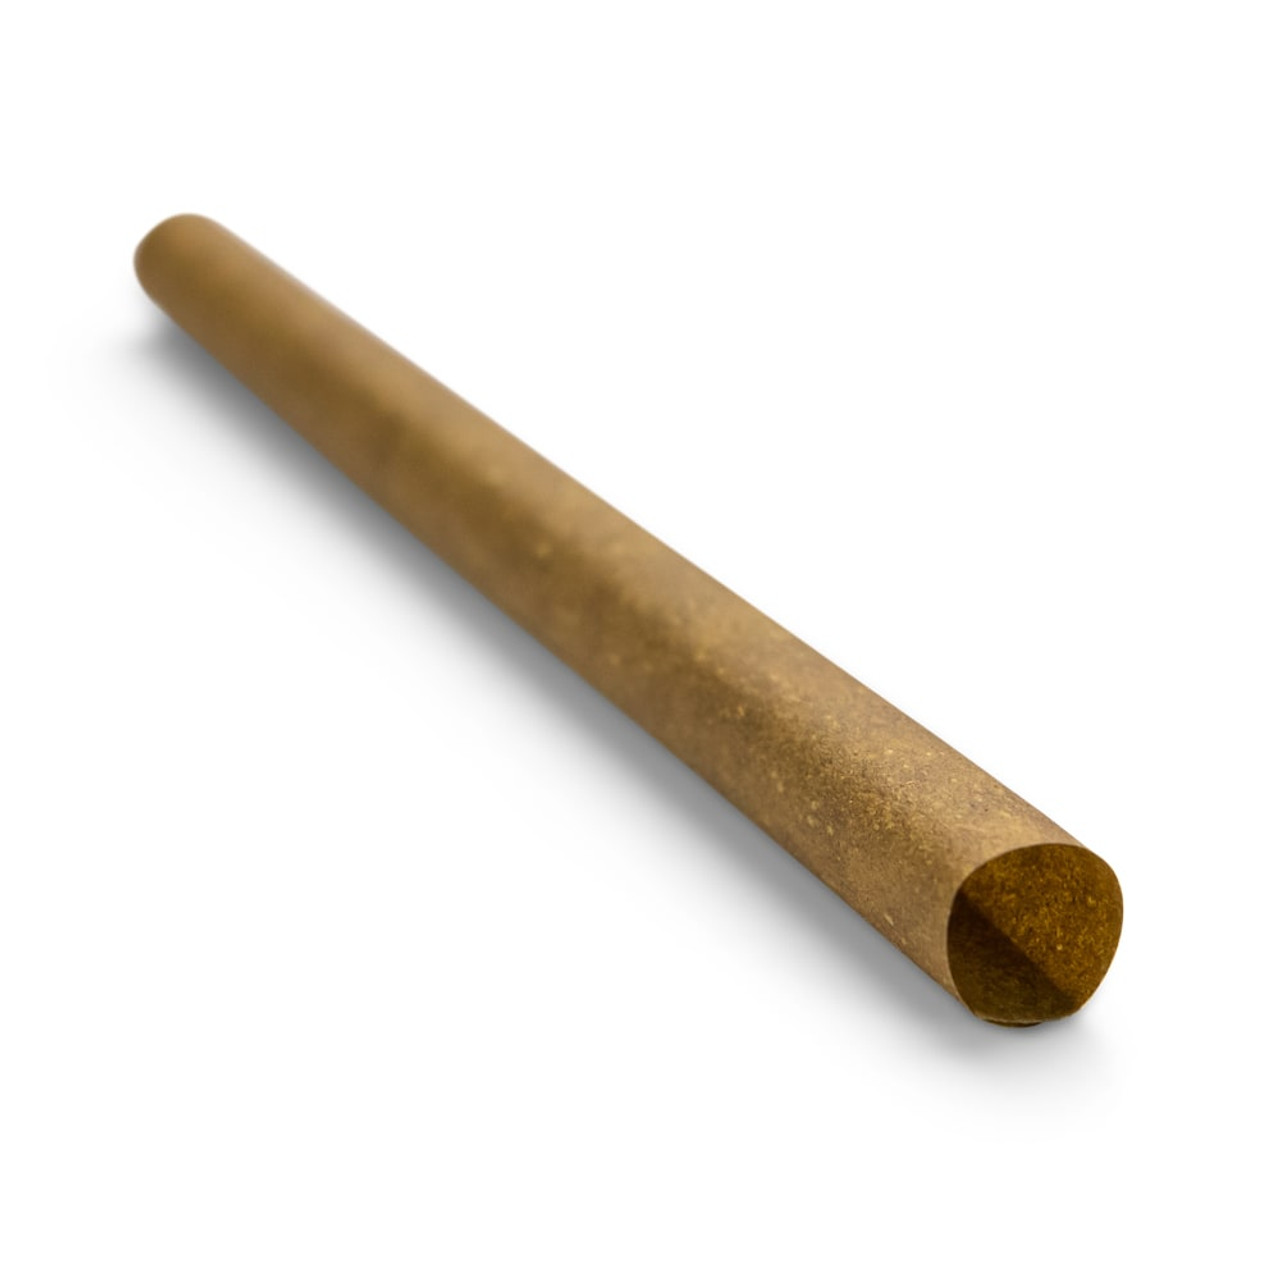 109mm 1 Gram Brown Hemp Wrap Blunt Tube with Wood Tip